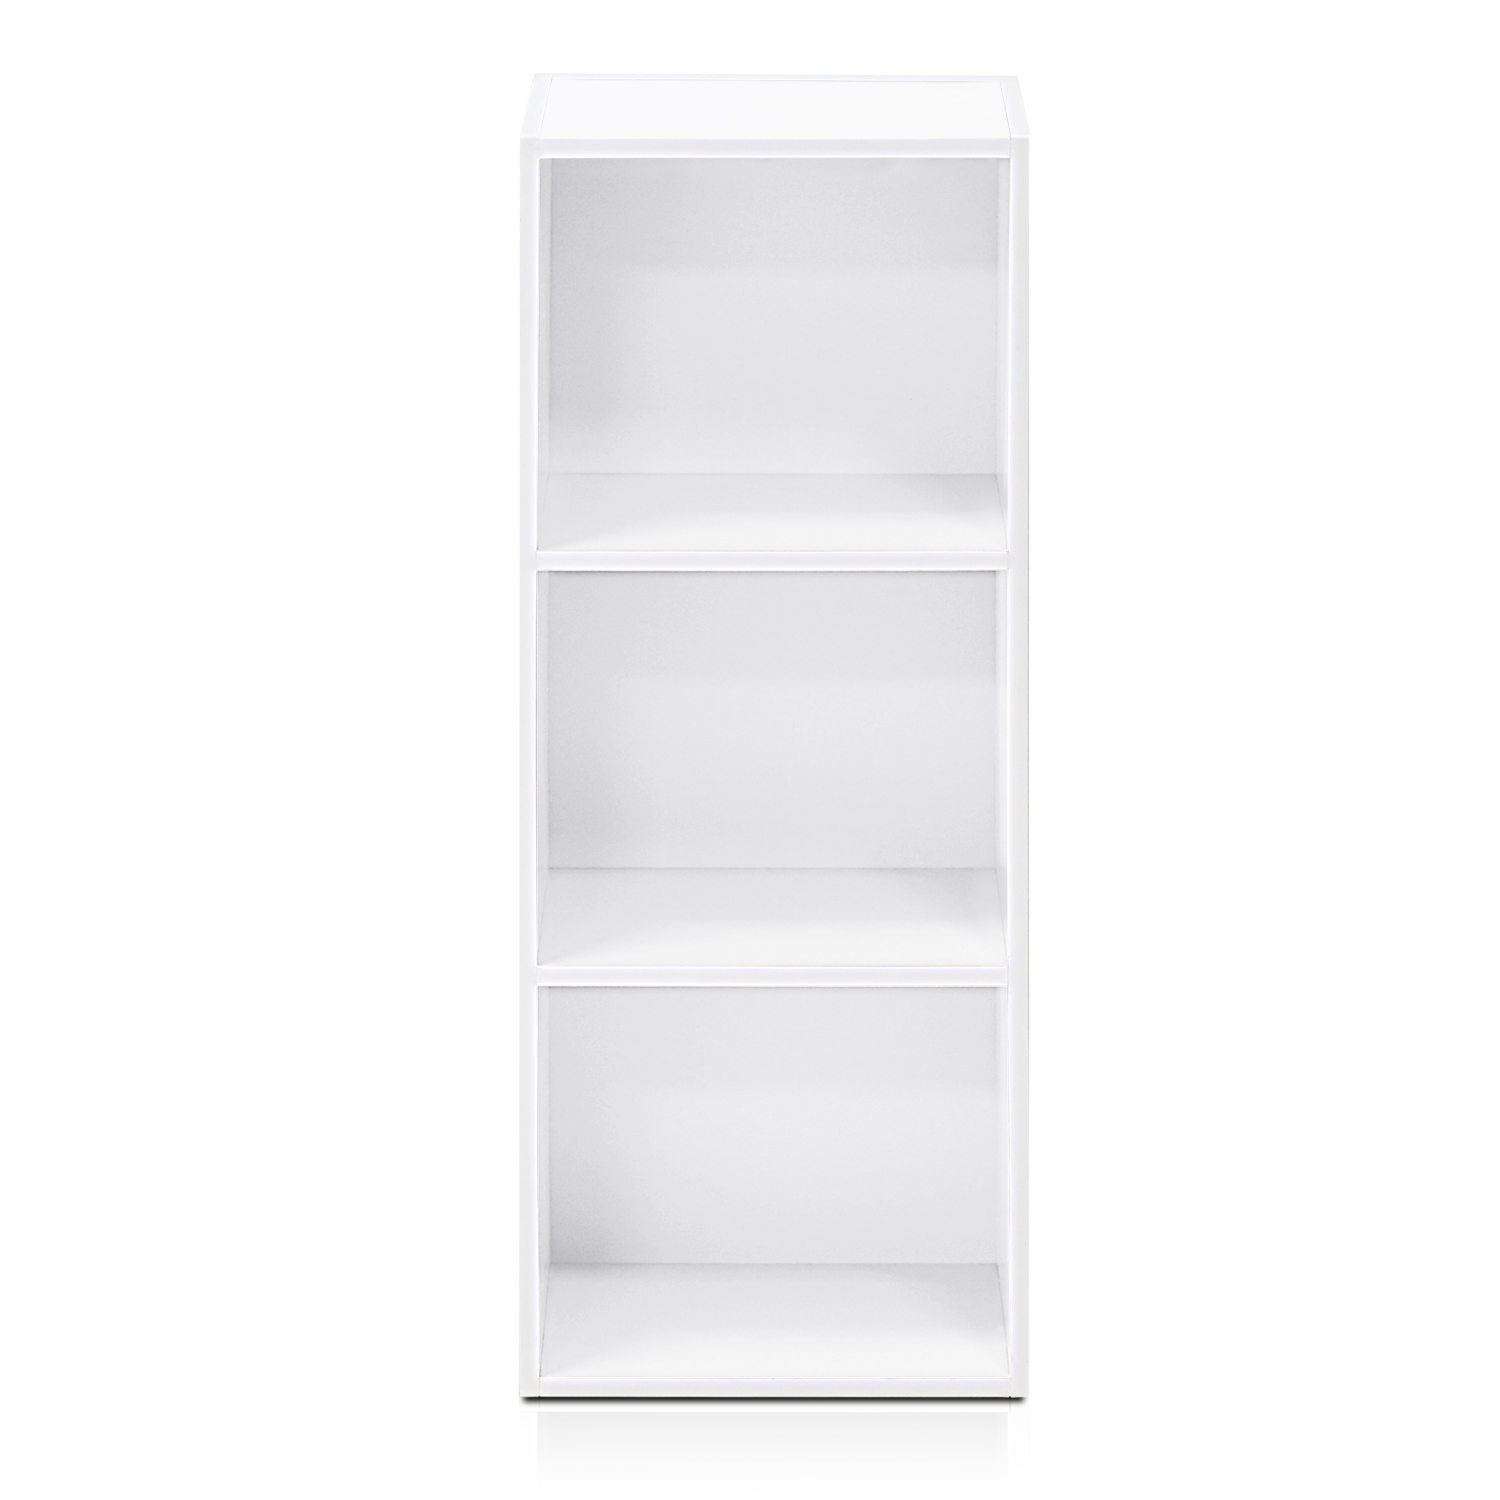 Furinno 11003WH 3 - Tier Open Shelf Bookcase, White Color - 12" W x 31.5" H x 9.3" D - image 1 of 10